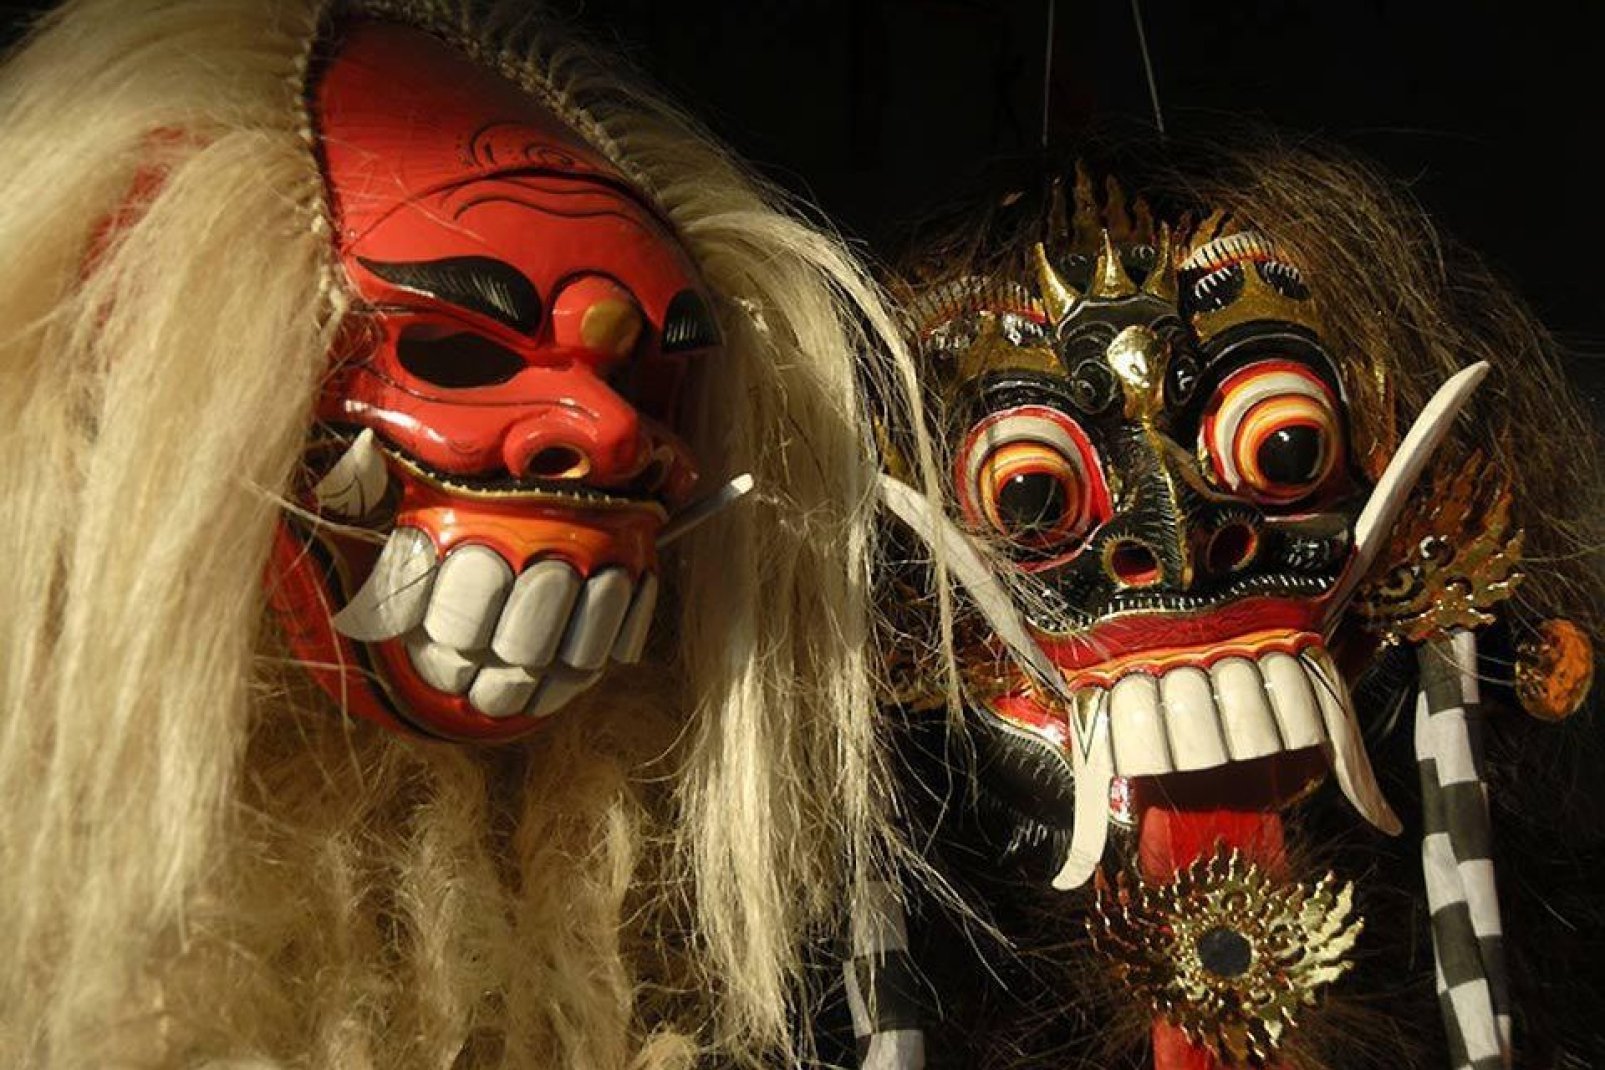 Les mythes et légendes balinais sont prétexte à une débauche de créativité comme ici sur ces masques de représentation.